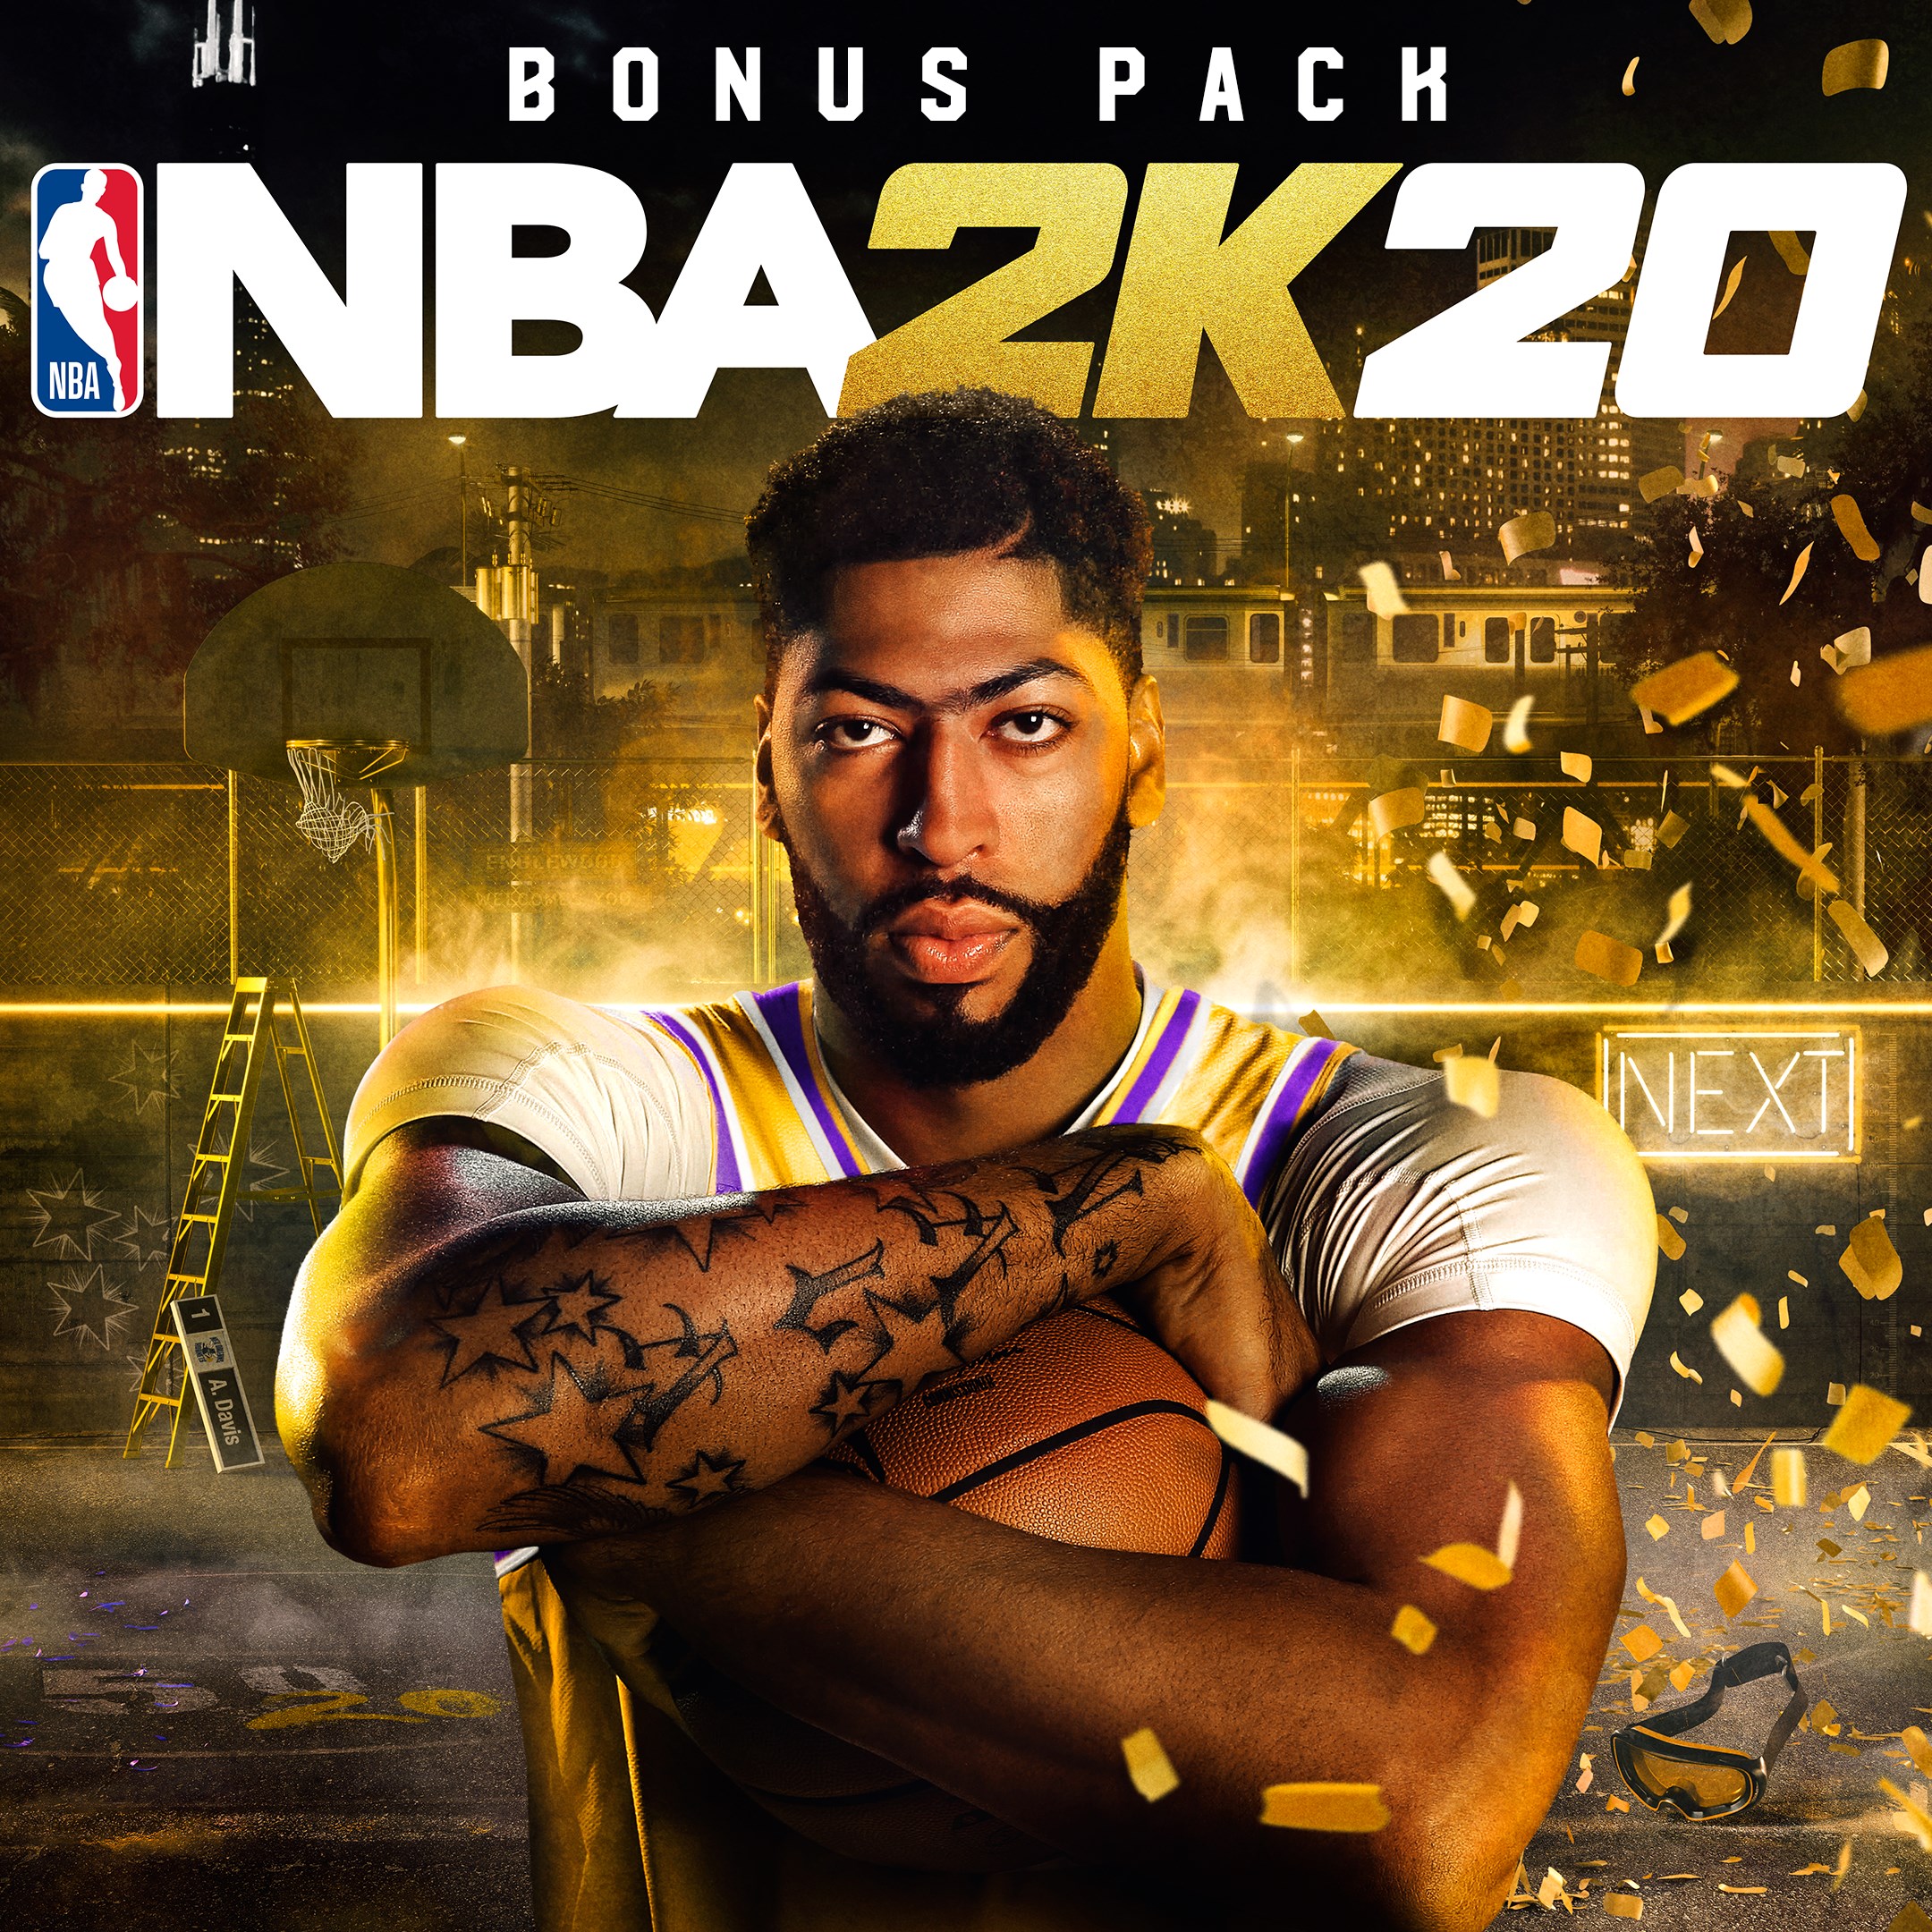 Bonificación de NBA 2K20 Digital Deluxe